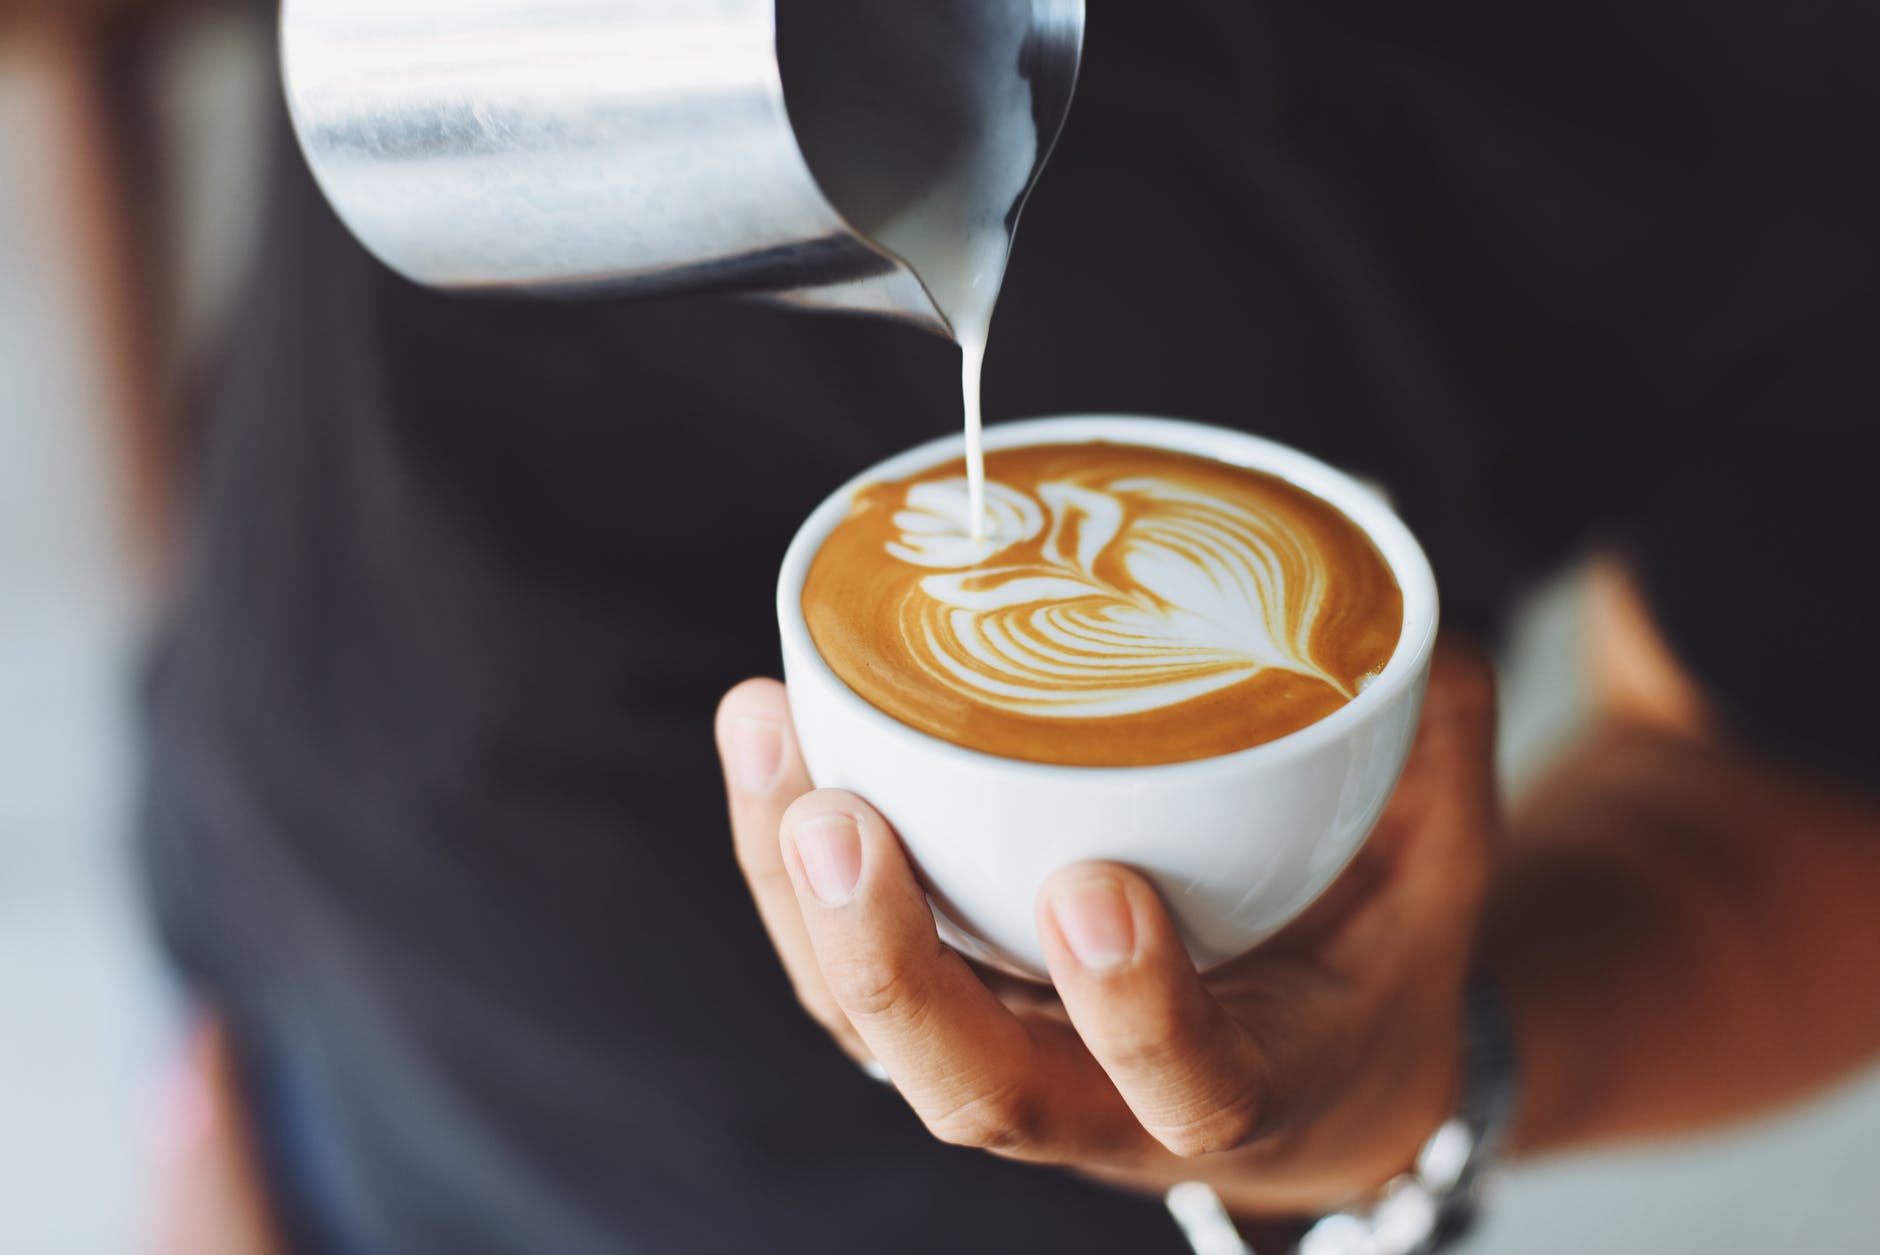 Ingin Buat Kopi Seperti di Kafe? Kenali 9 Jenis Coffee Maker yang Mudah Digunakan di Rumah